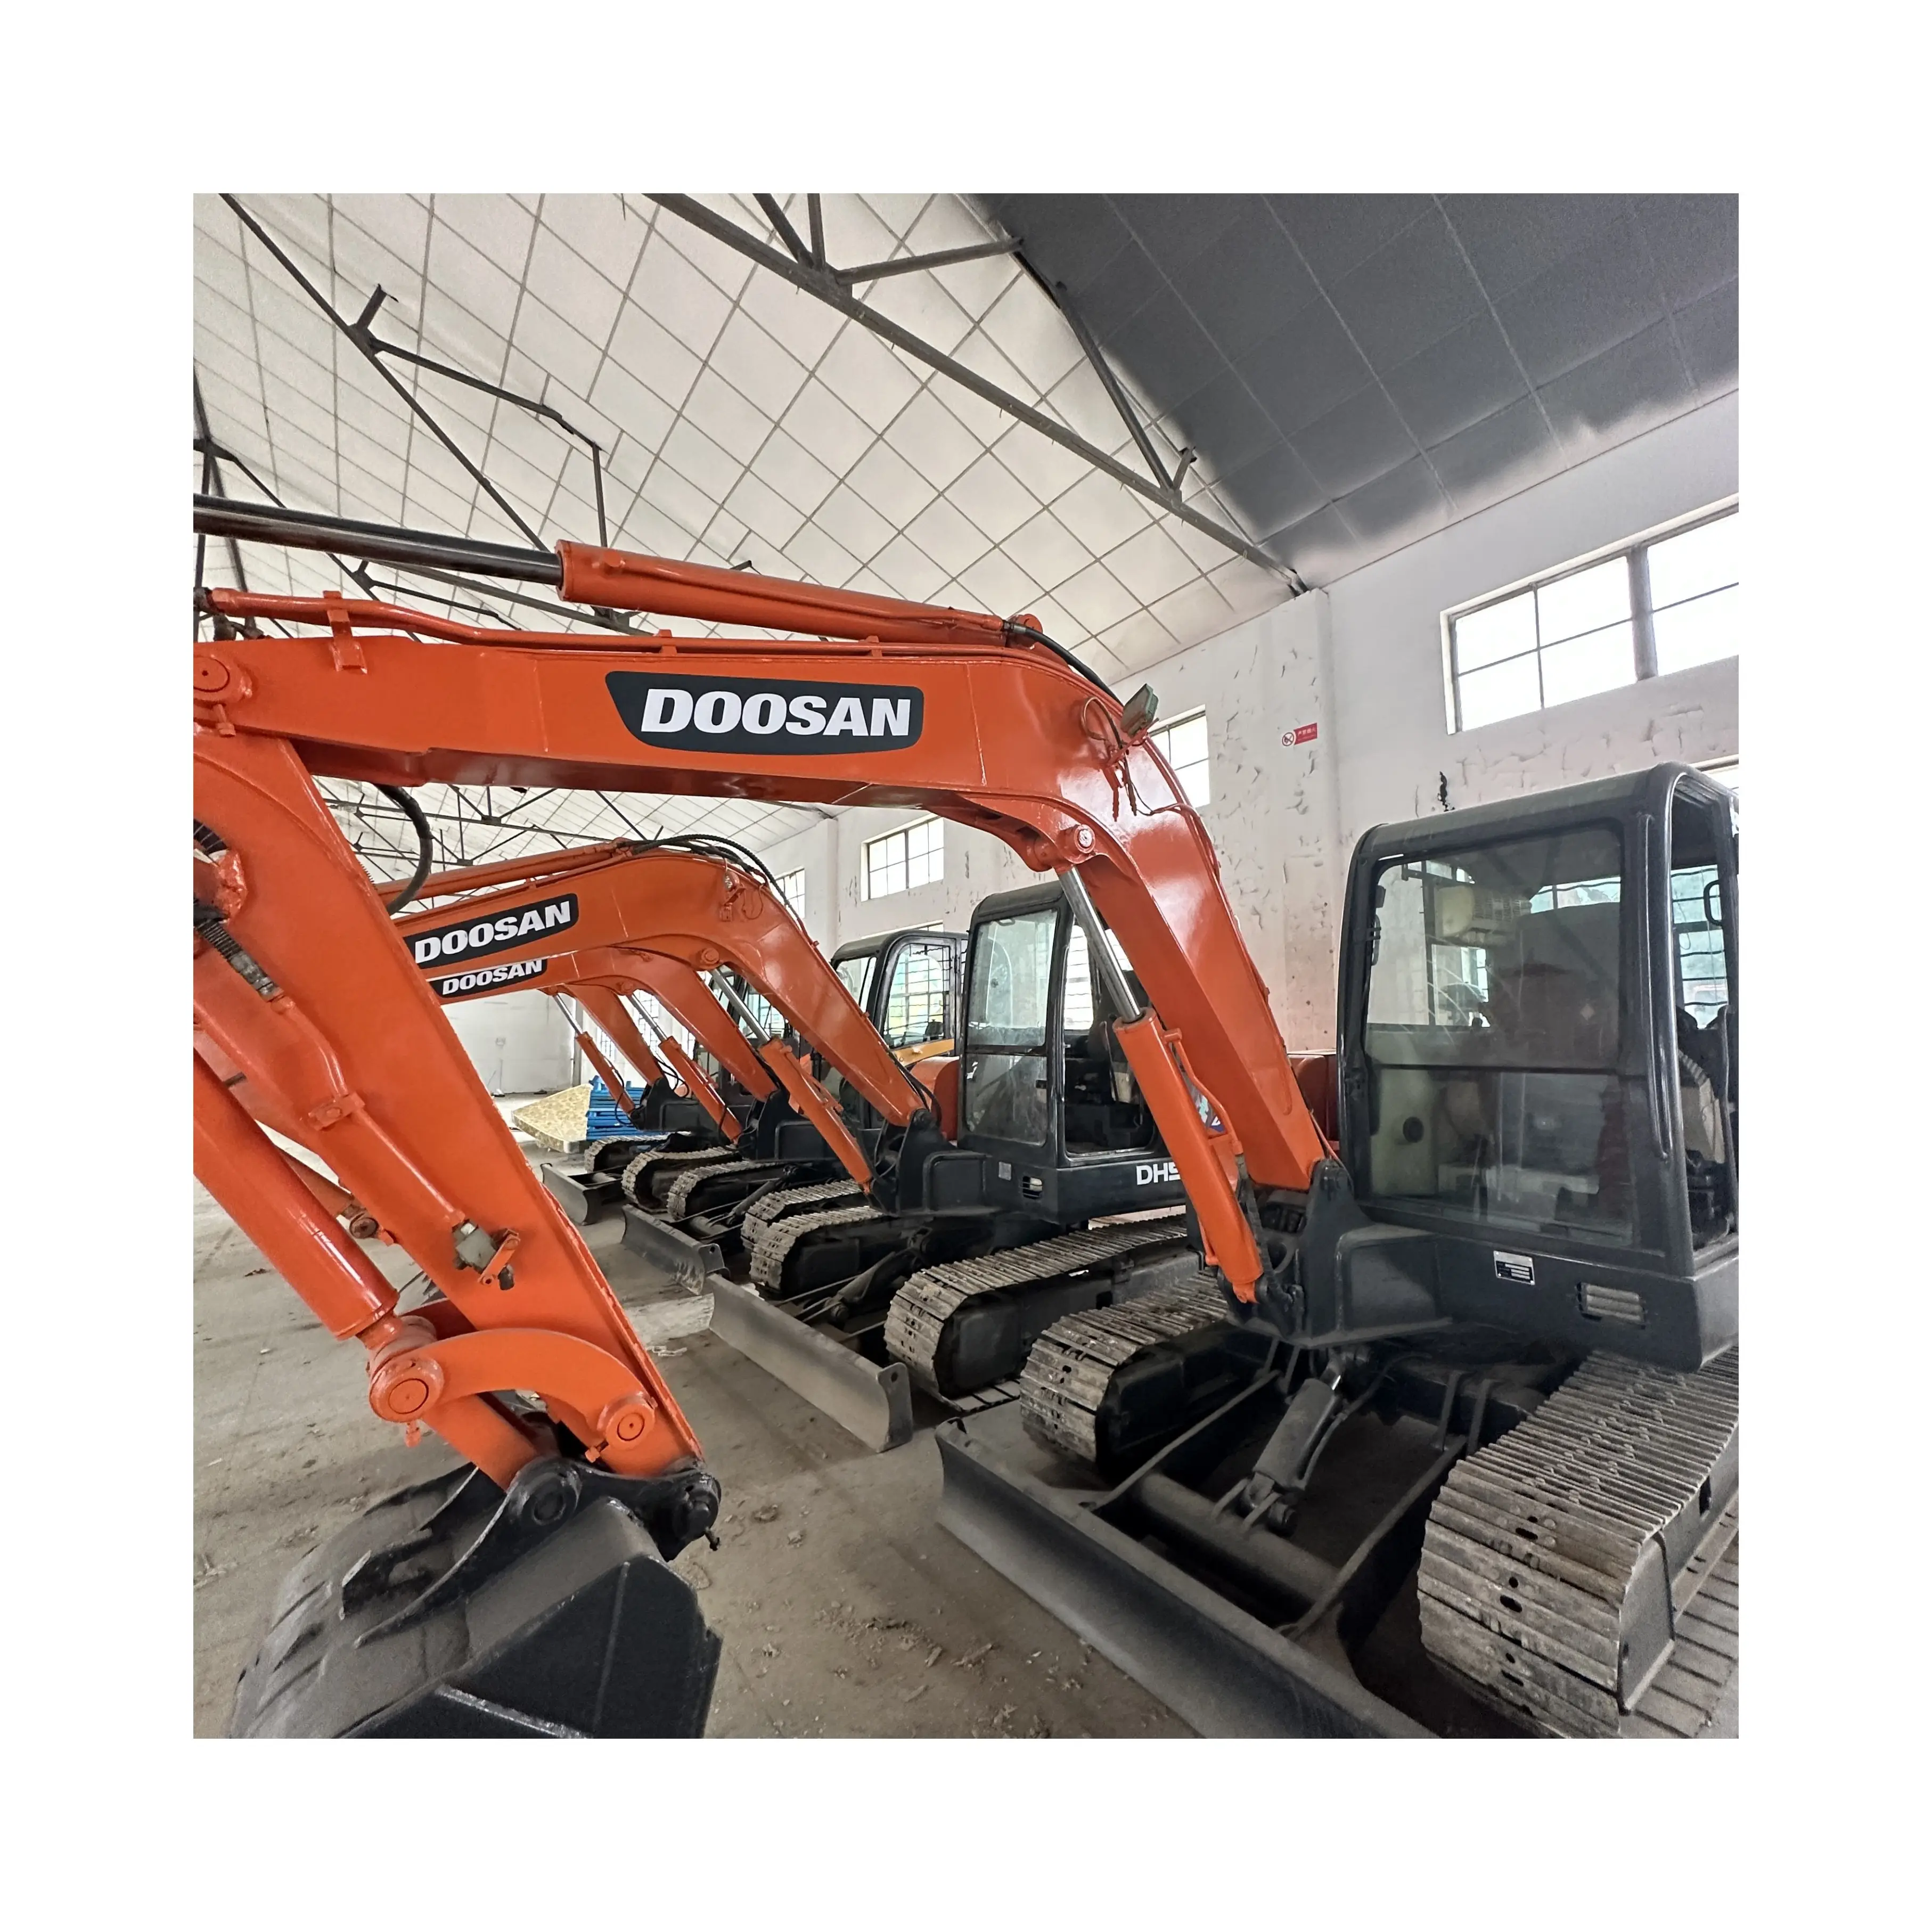 Хорошее состояние, низкая цена, Подержанный DH60-7 гусеничный экскаватор DOOSAN 6 тонн, сделано в Южной Корее Doosan DH55 DX55 DH60 DX75 DX80